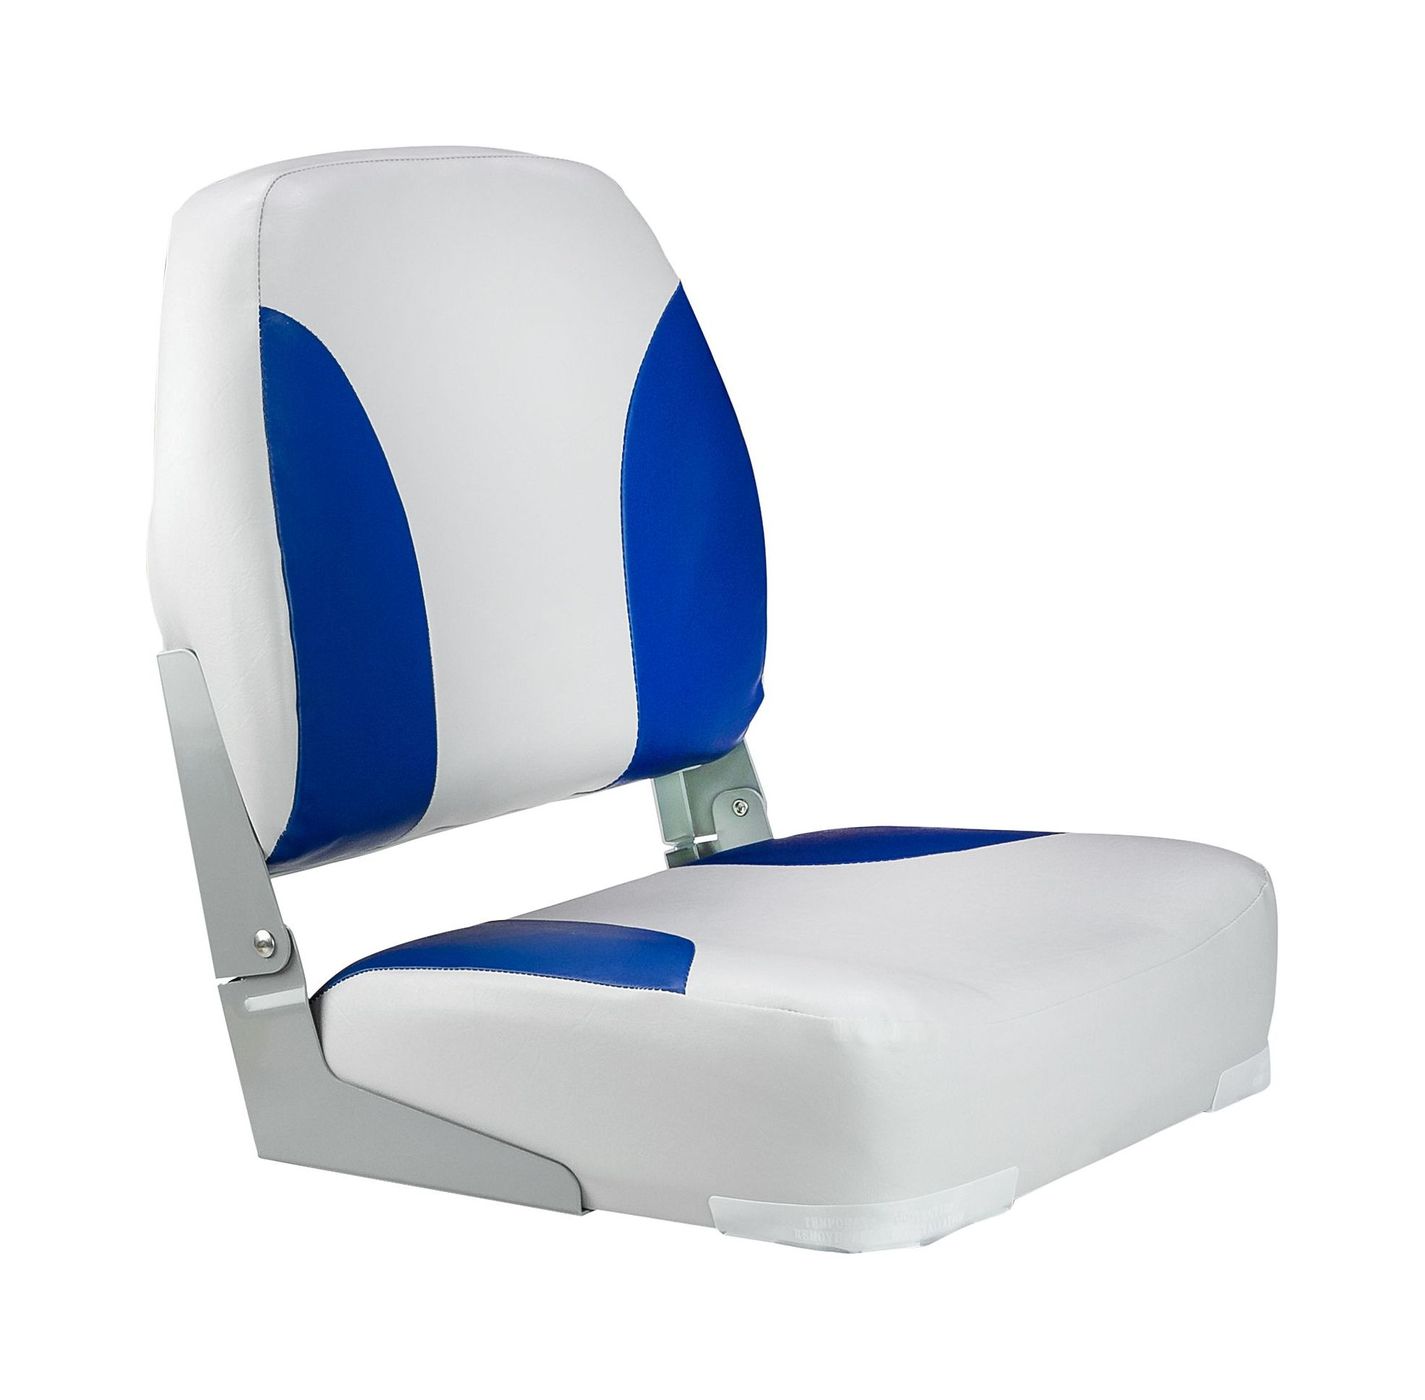 Кресло мягкое складное Classic, обивка винил, цвет серый/синий, Marine Rocket 75102GB-MR кресло мягкое складное обивка винил серый красный marine rocket 75109gr mr